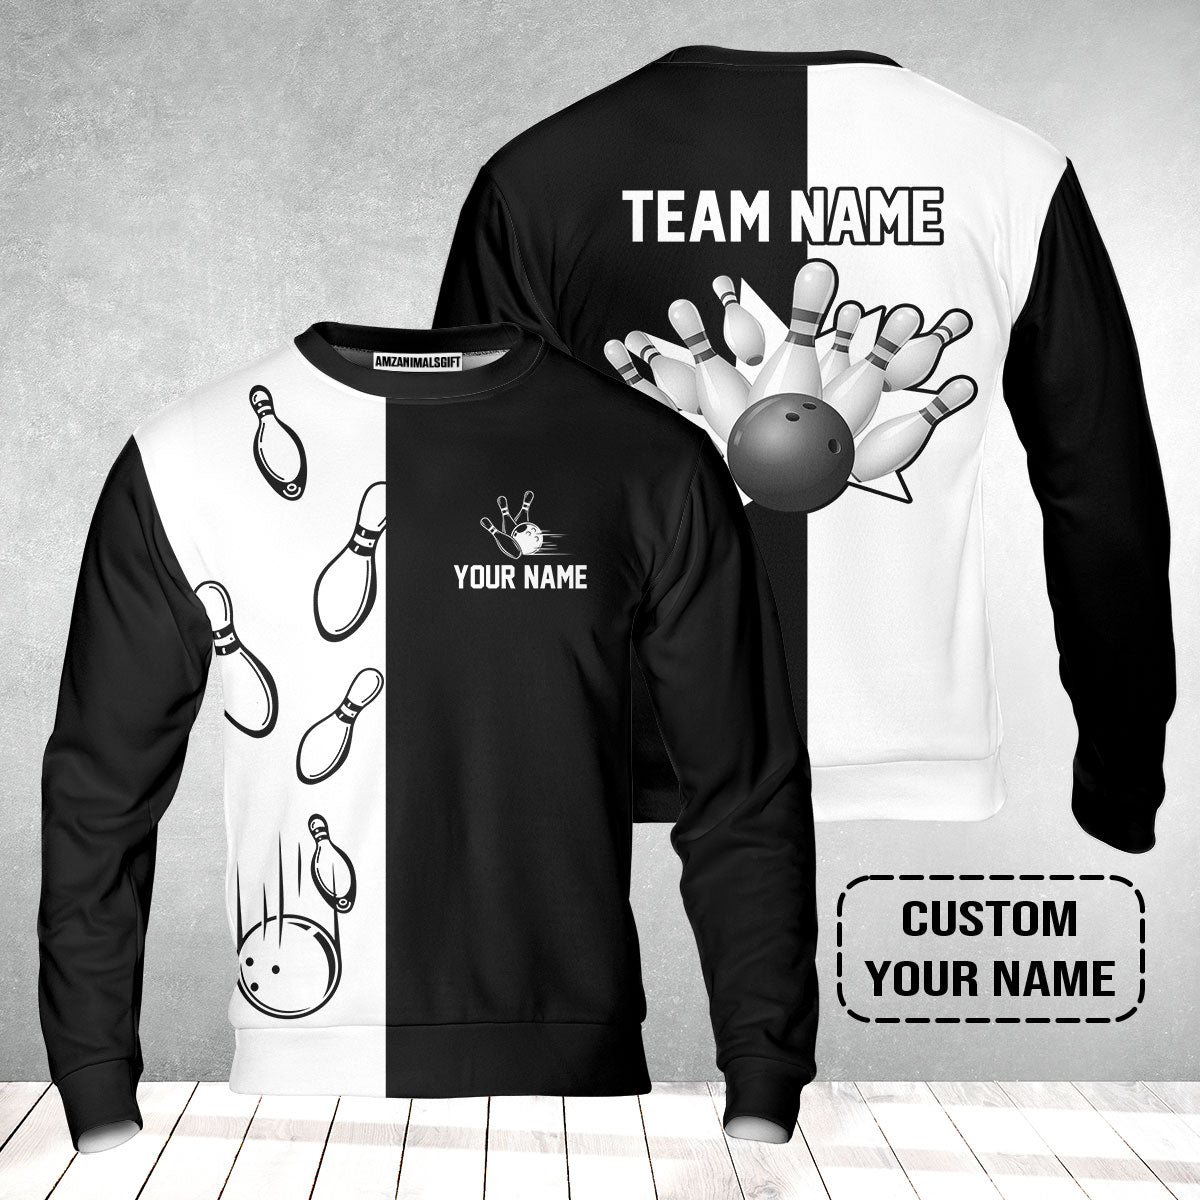 Bowling Custom Sweatshirt - Custom Name Black and white retro vintage Bowling Personalized Sweatshirt